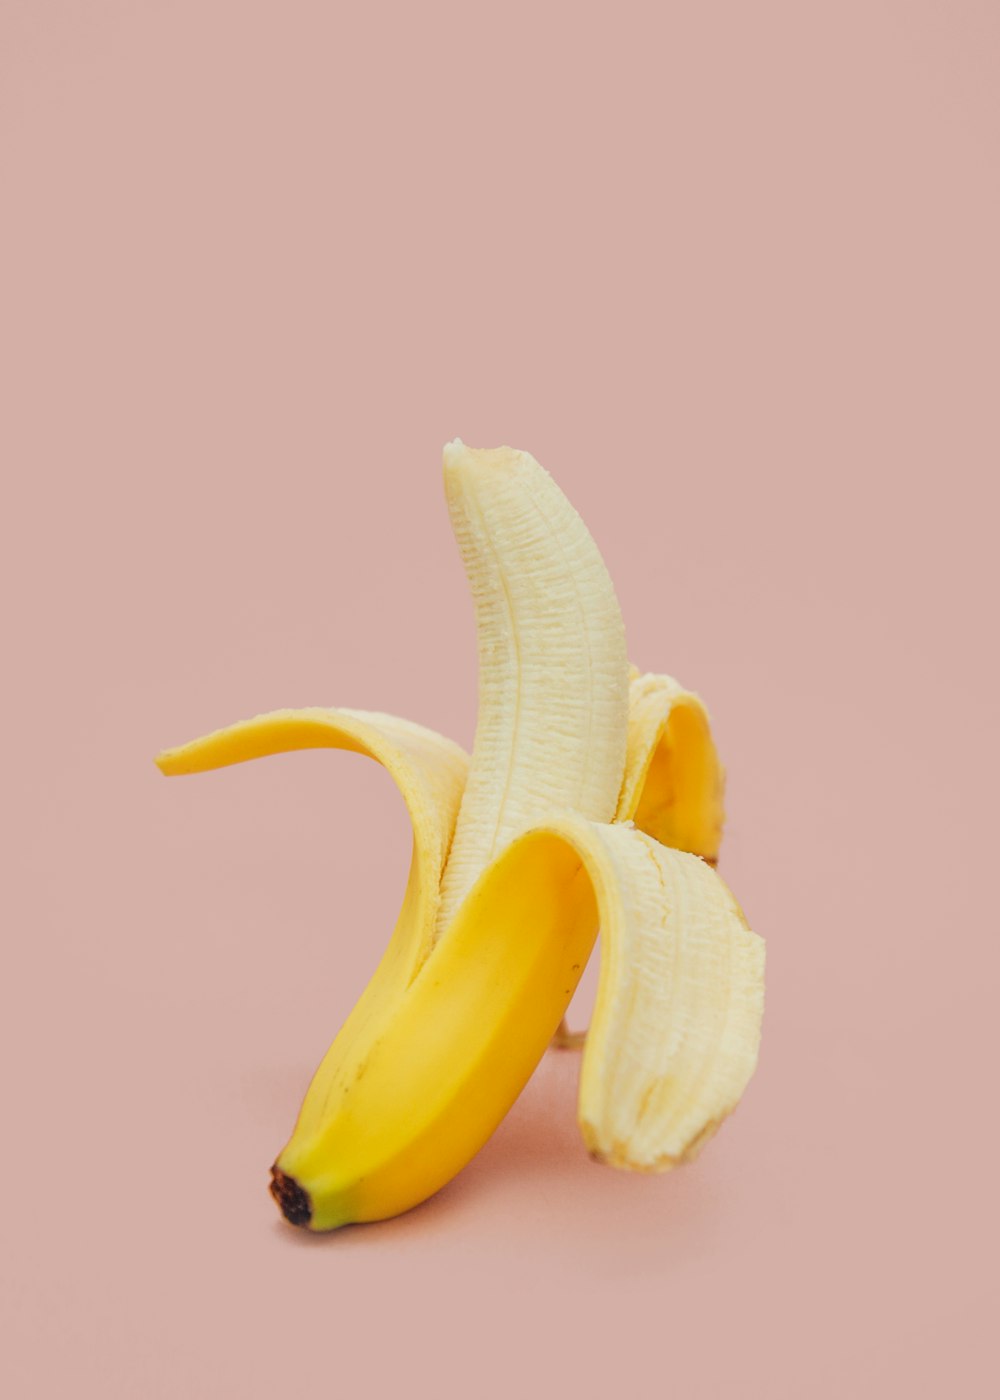 껍질을 반쯤 벗긴 바나나 과일